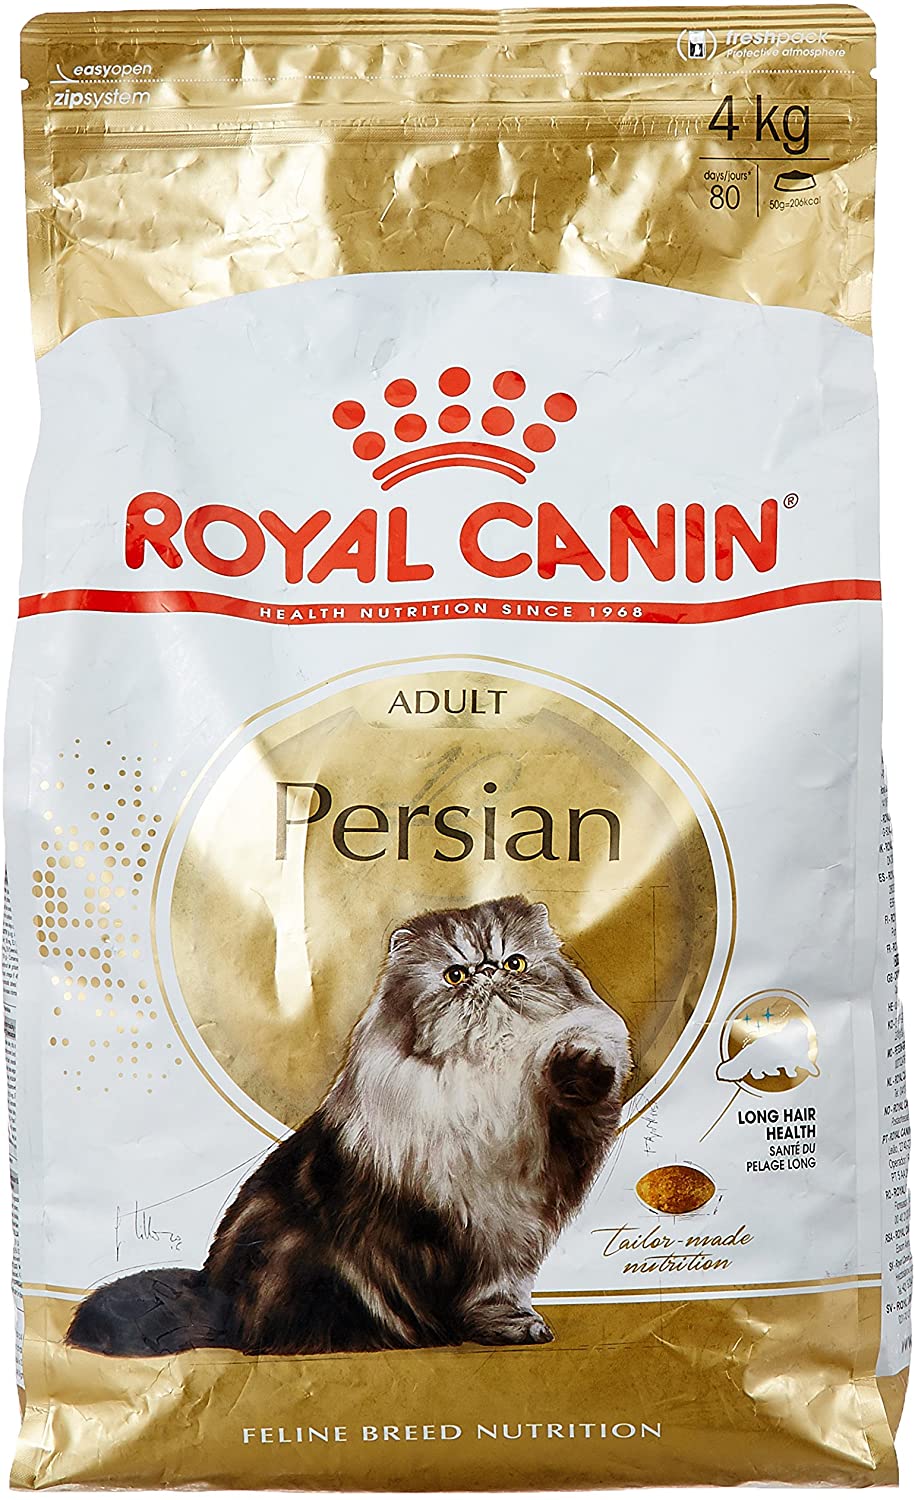  Royal Canin C-58614 Persian - 4 Kg 